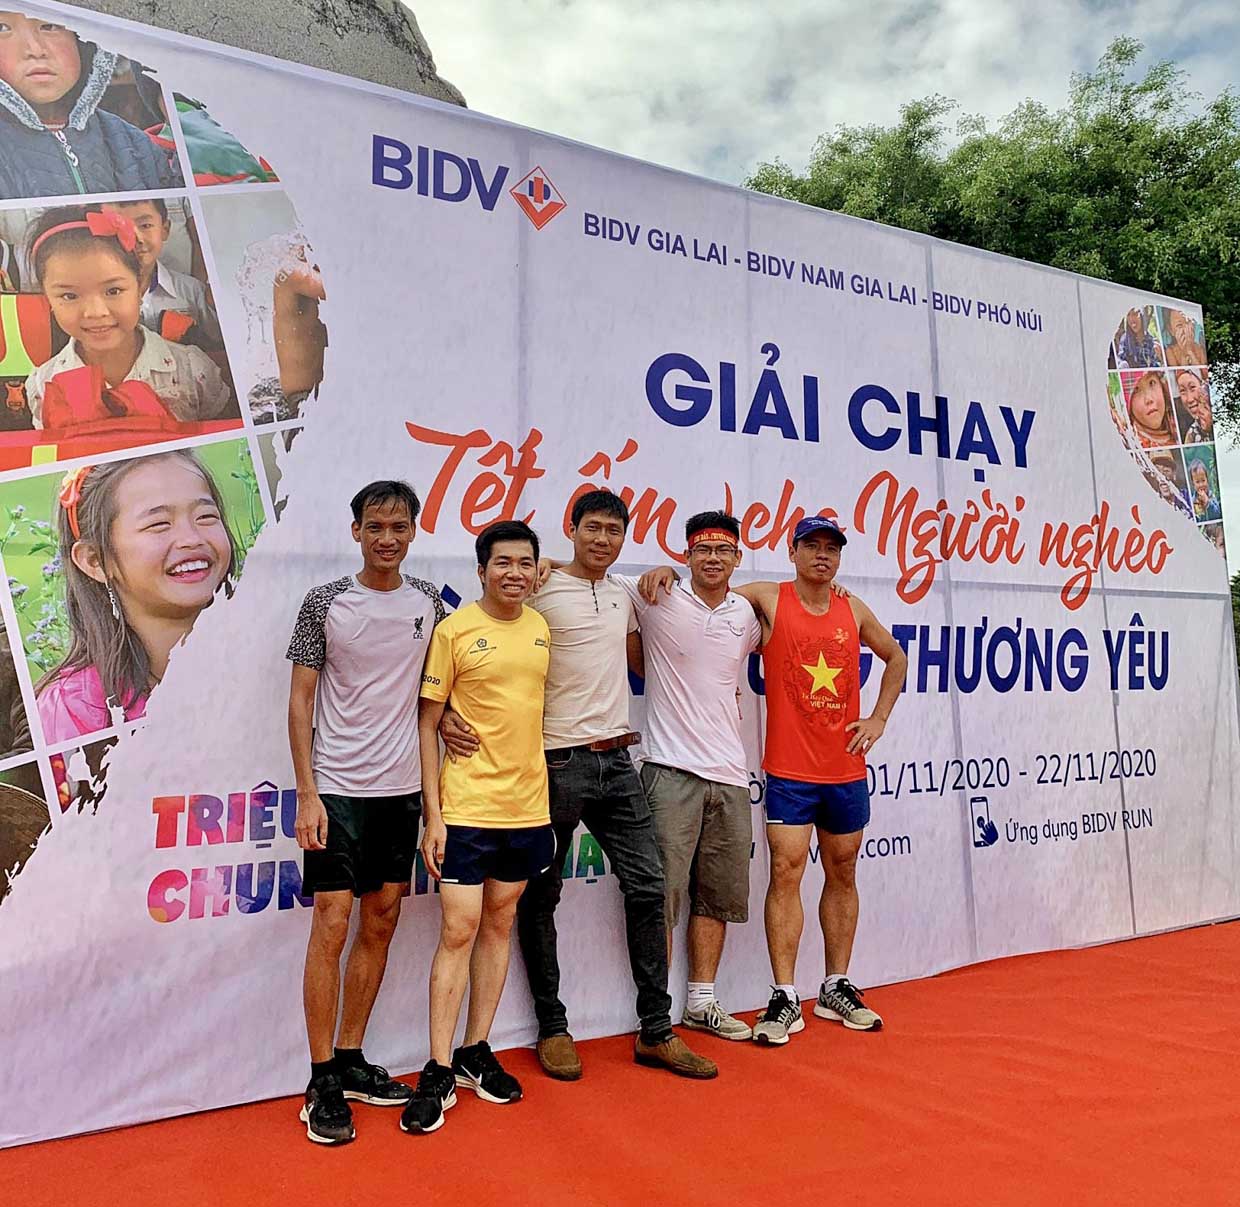 Cộng đồng chạy bộ tại TP. Pleiku tham gia giải chạy online “Tết ấm cho người nghèo-Vì miền Trung thương yêu”. Ảnh: Minh Châu